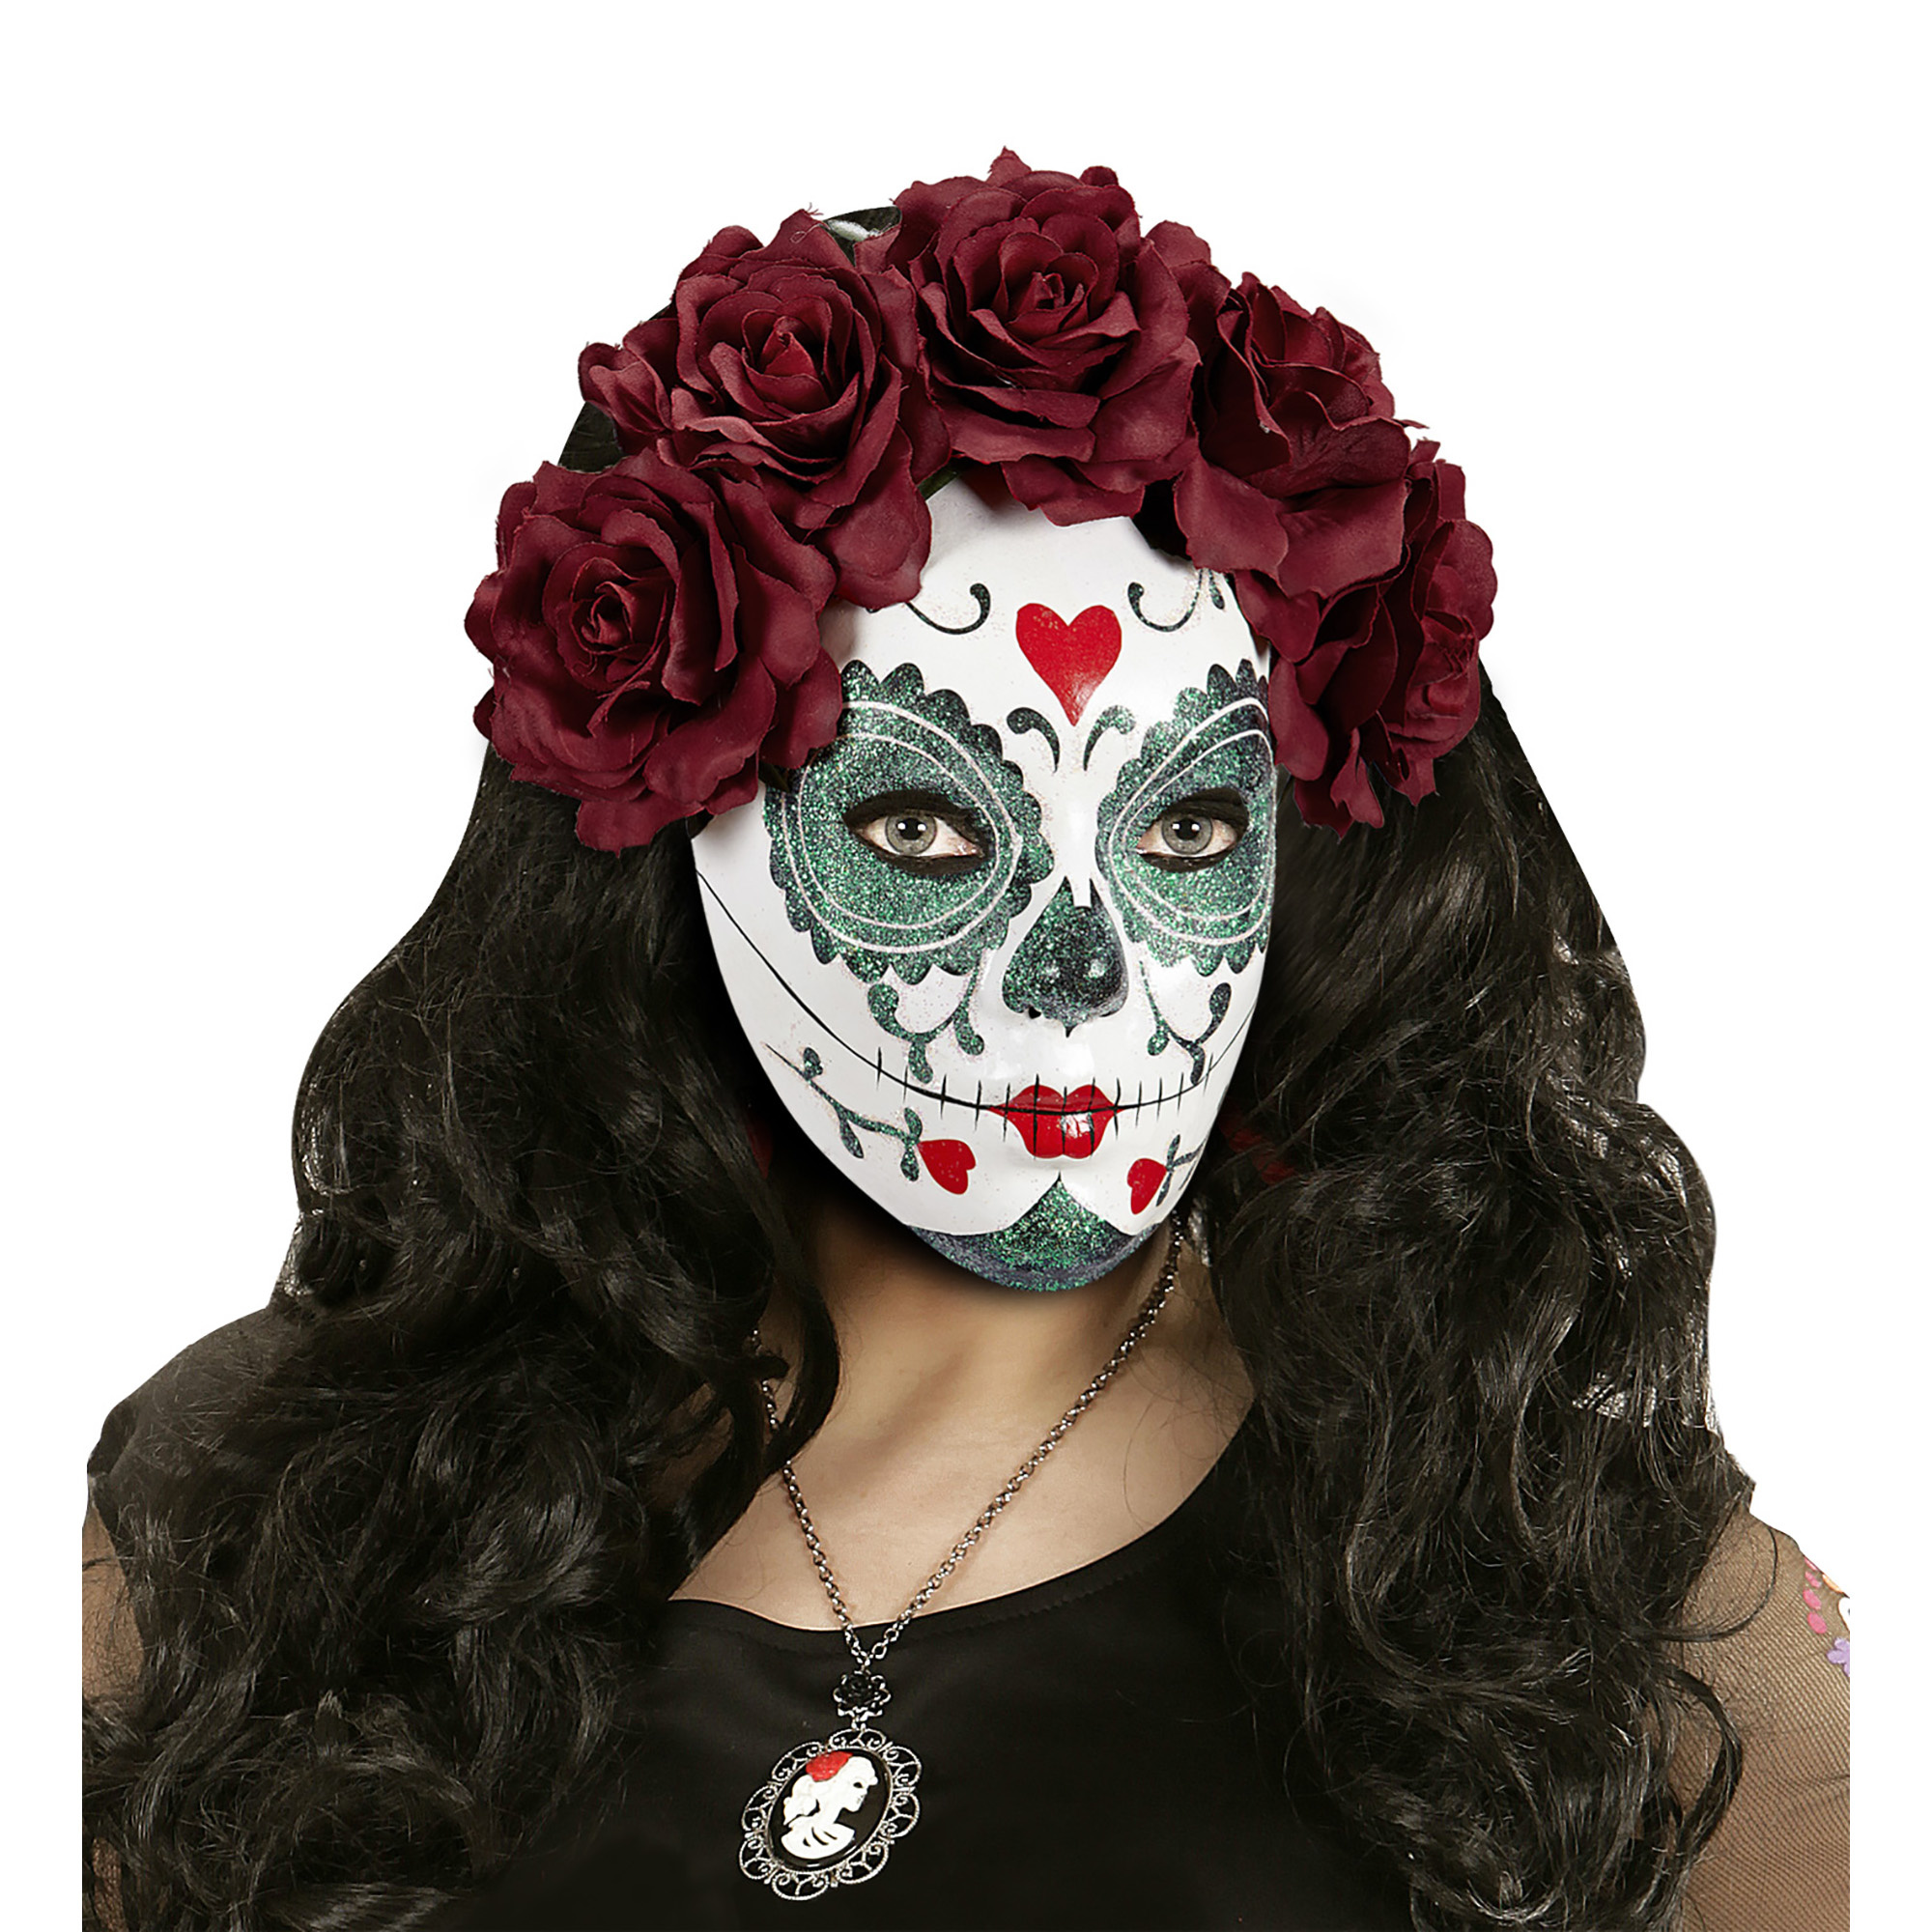 WIDMANN - Dia de los Muertos masker met rode rozen voor volwassenen - Maskers > Half maskers